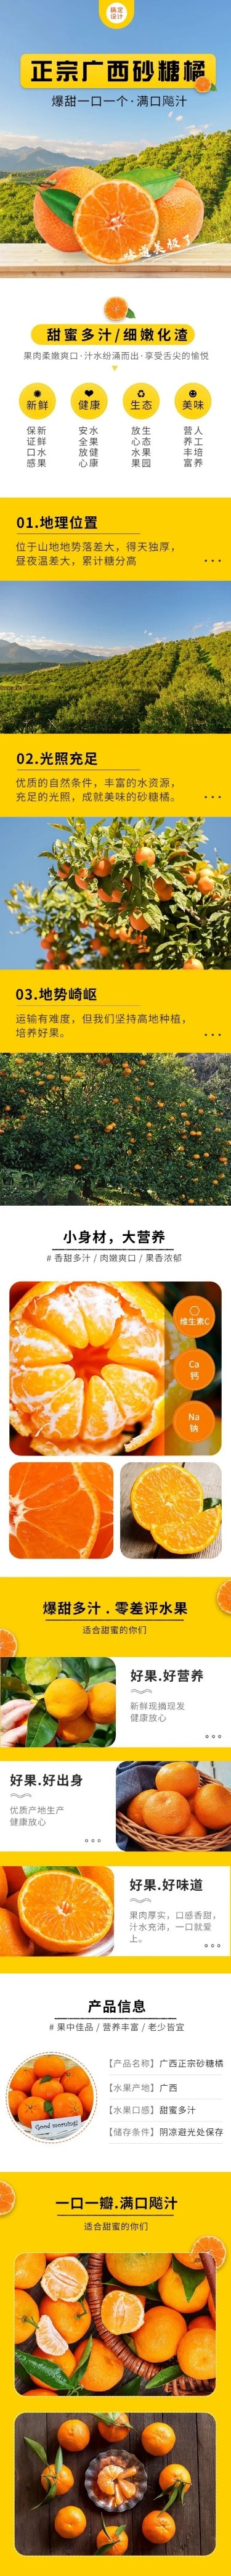 清新春上新食品生鲜水果橘子详情页